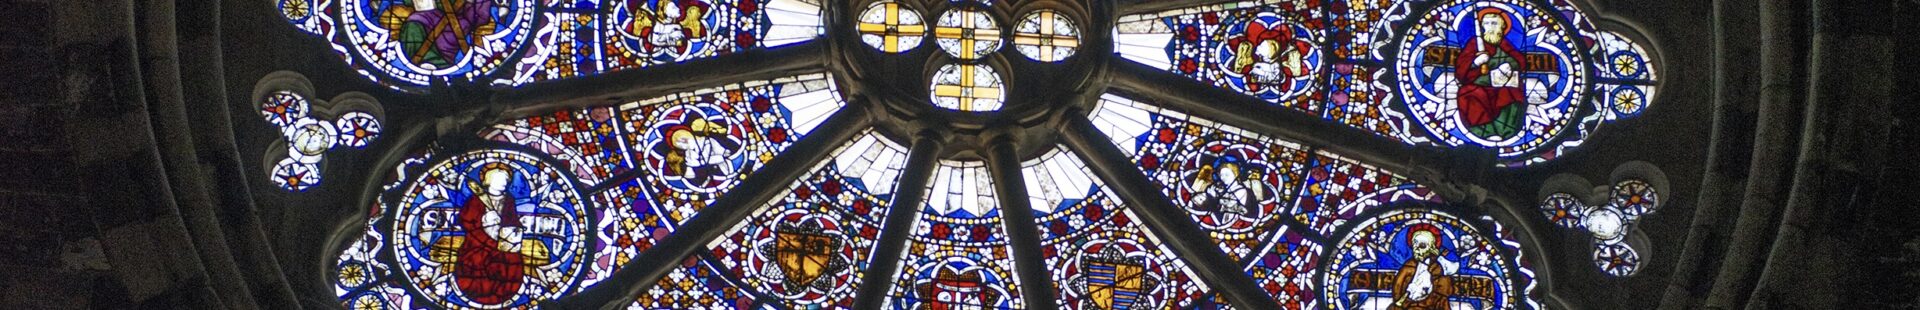 vitraux cathédrale d'Embrun